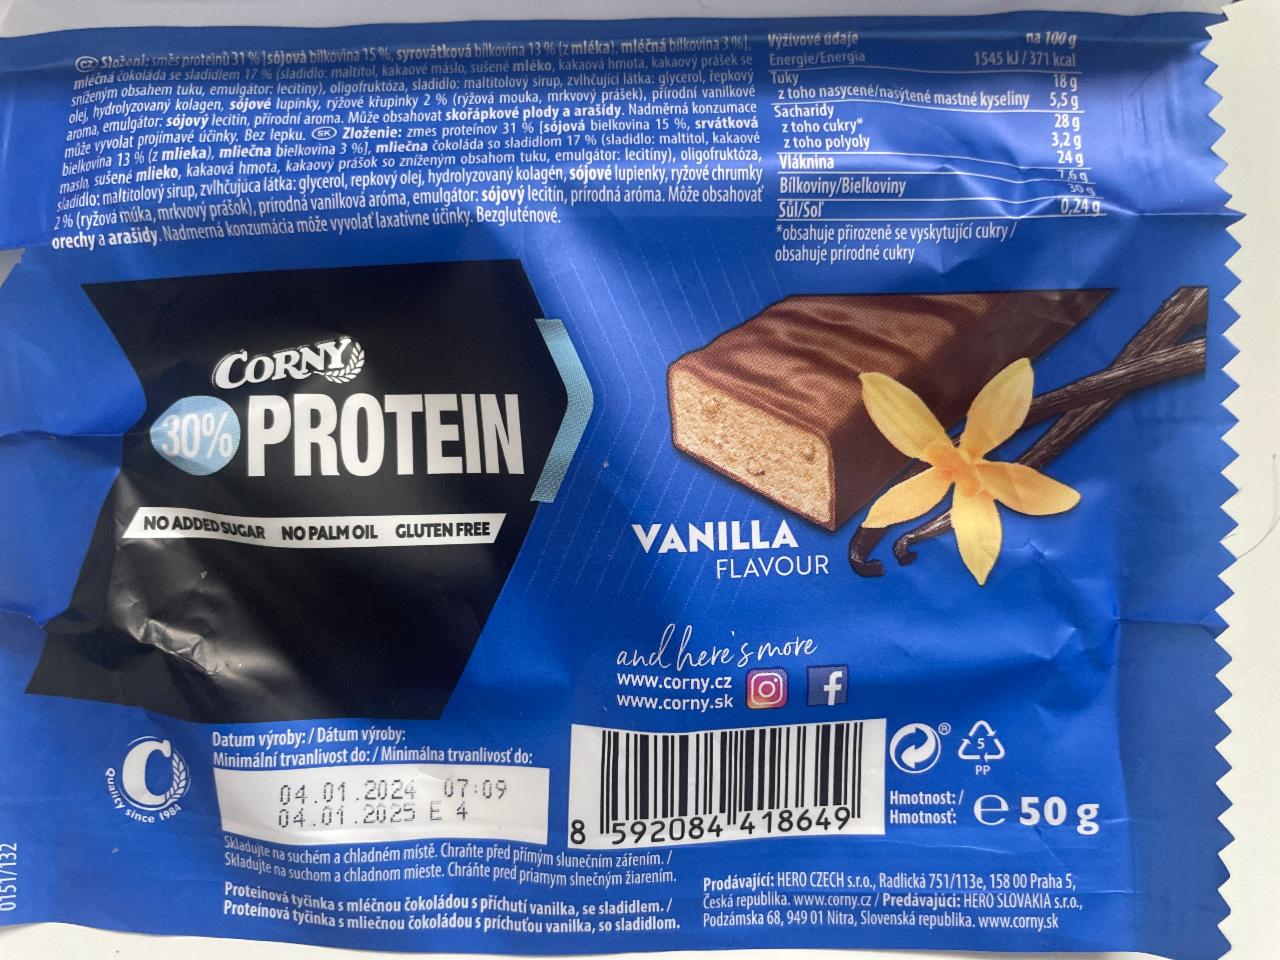 Fotografie - 30% Protein Vanilla flavour Corny